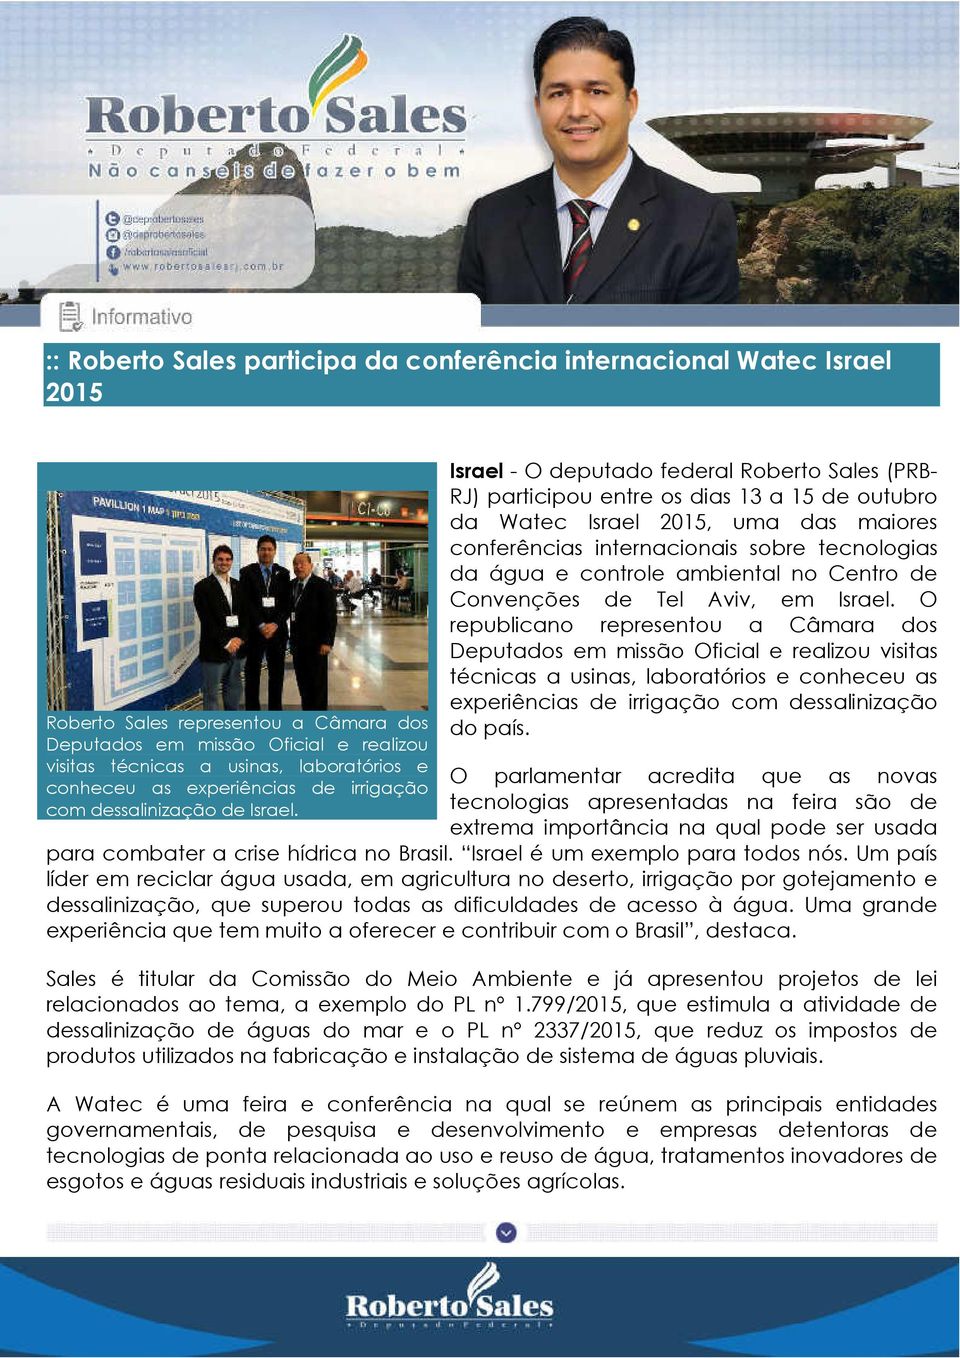 Israel - O deputado federal Roberto Sales (PRB- RJ) participou entre os dias 13 a 15 de outubro da Watec Israel 2015, uma das maiores conferências internacionais sobre tecnologias da água e controle